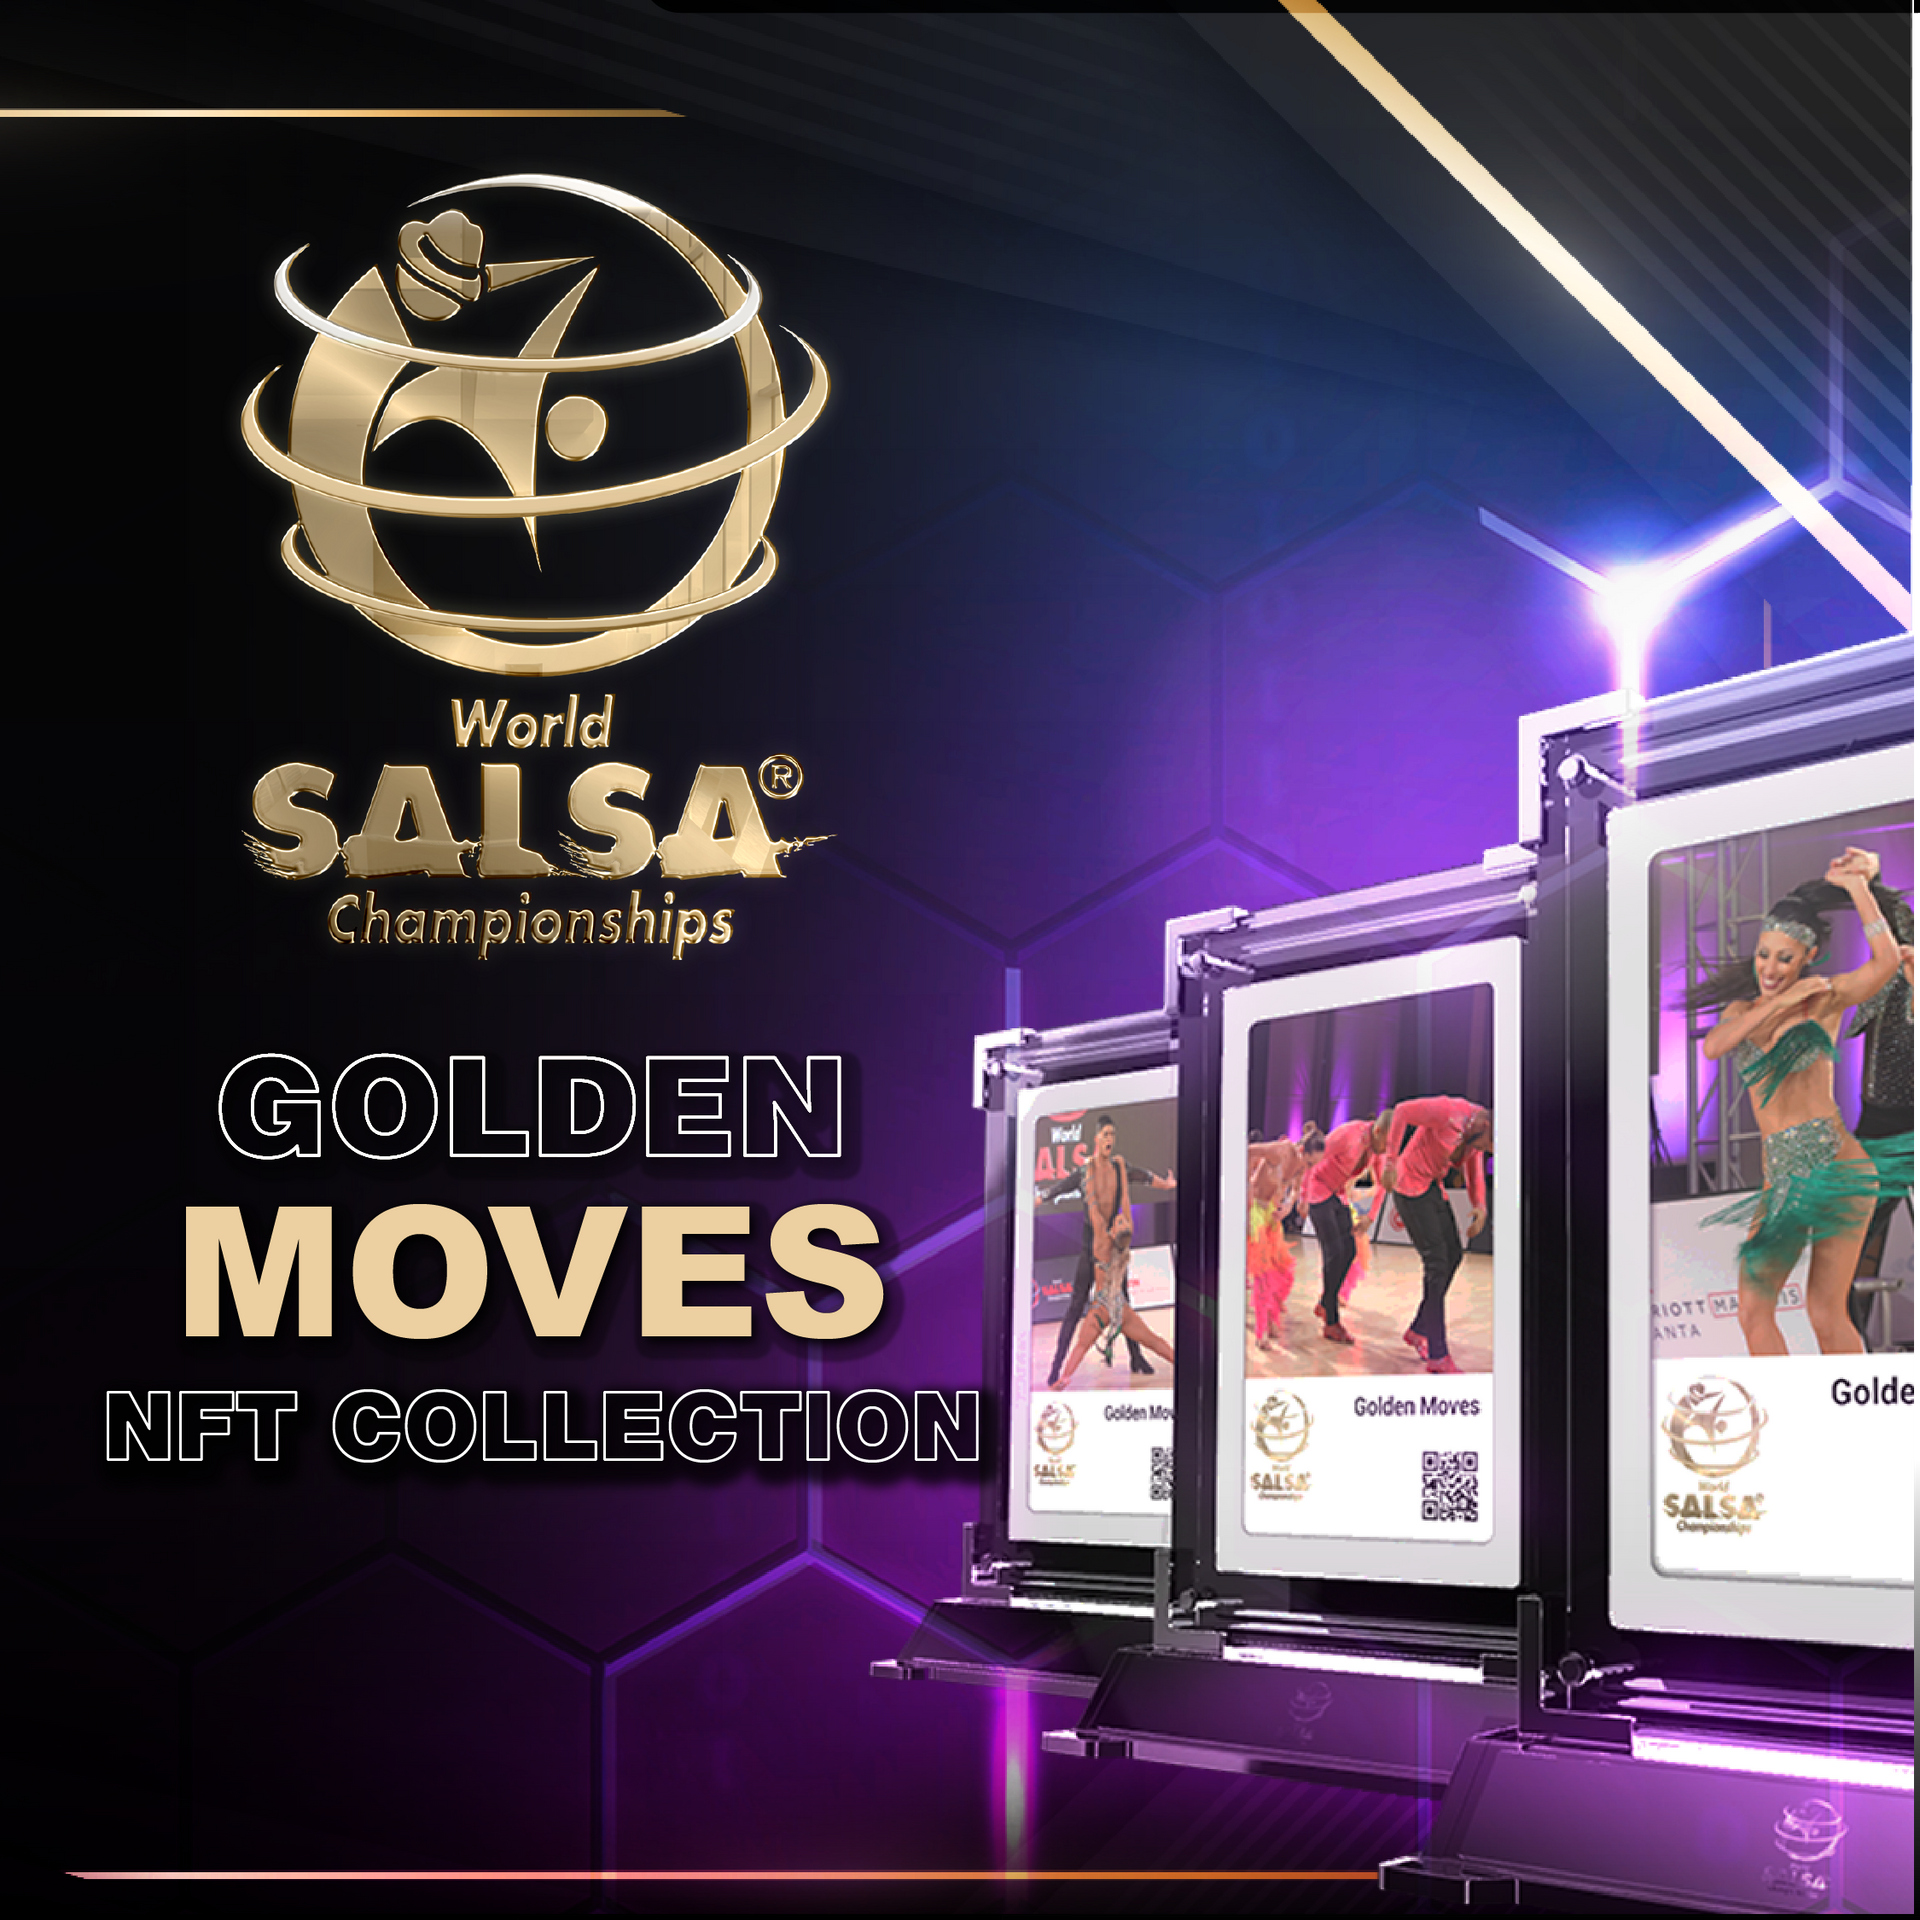 Load video: World Salsa Championships Golden Moves NFT Trailer